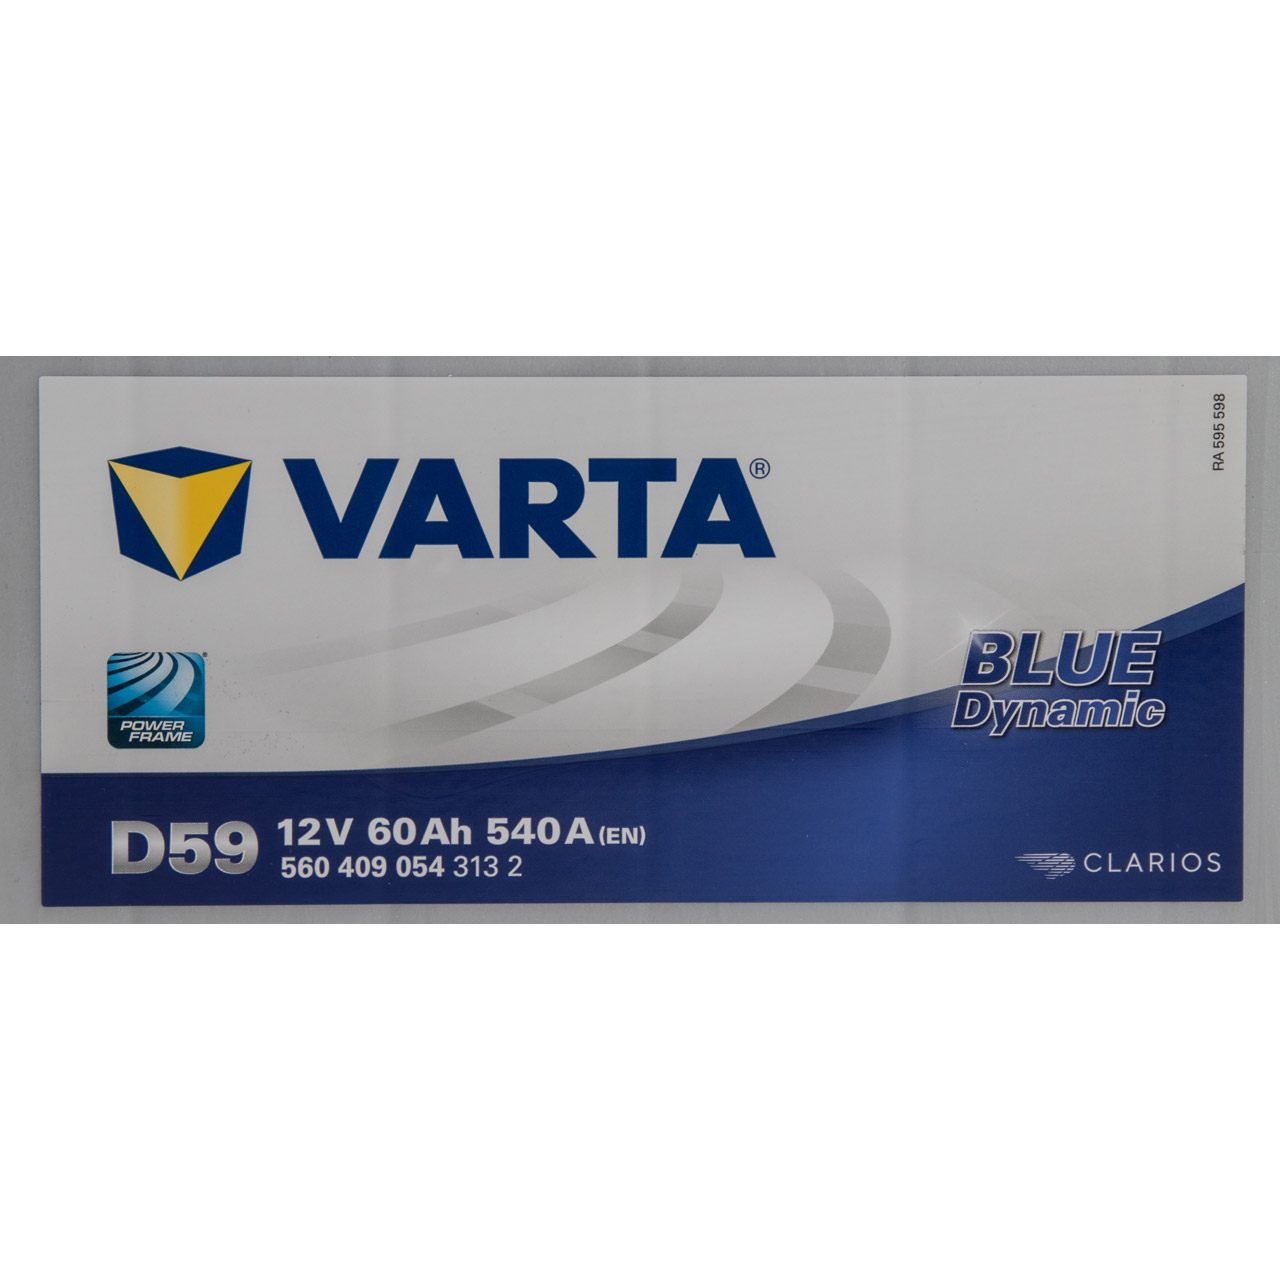 VARTA BLUE dynamic D59 Autobatterie Batterie Starterbatterie 12V